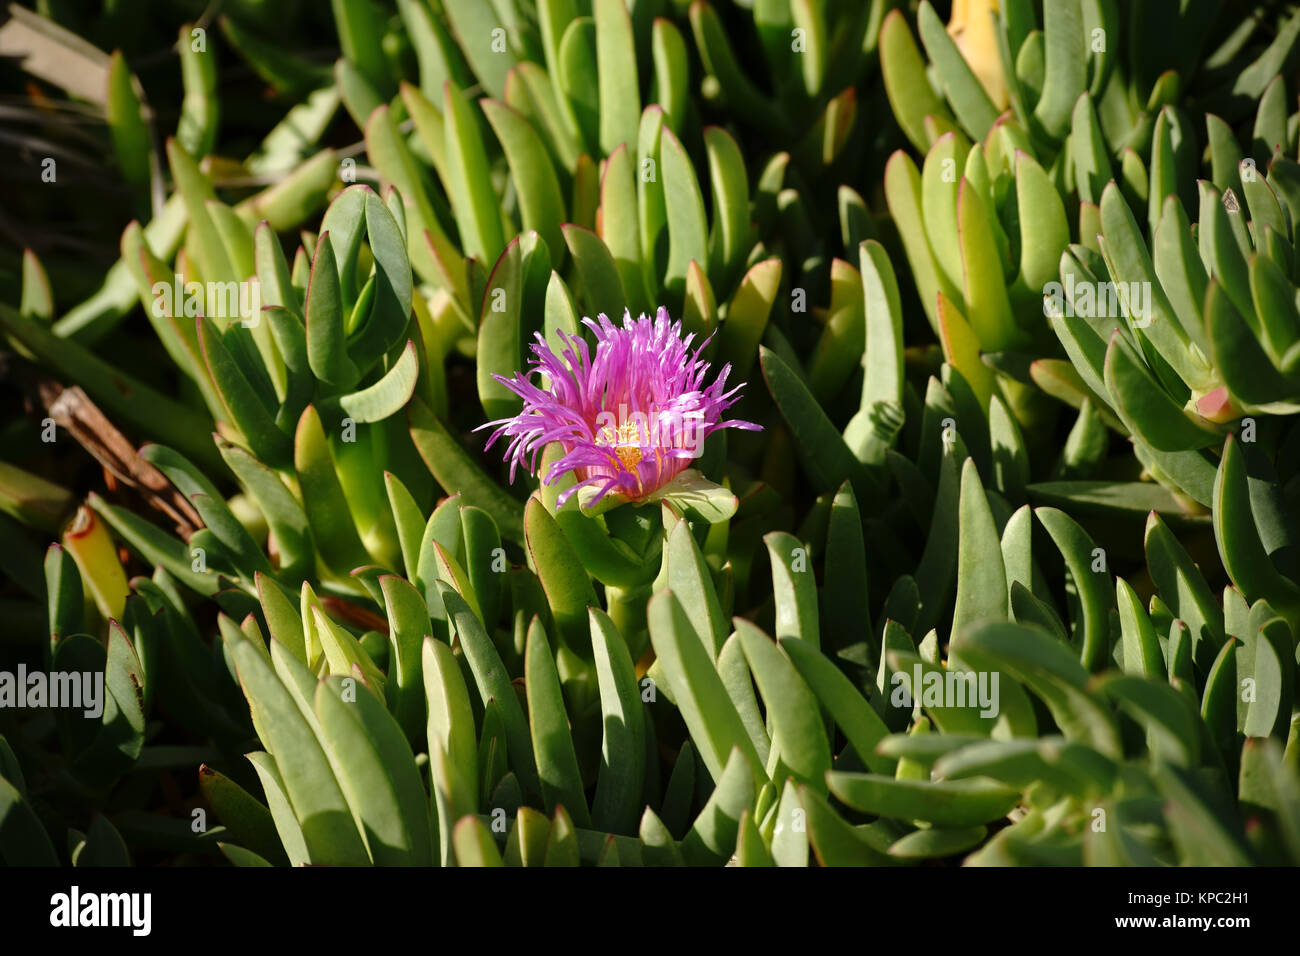 Die lila Blüte einer Carpobrotus chilensis Pflanze schaut zwischen fleischigen grünen Blättern hervor. Stock Photo